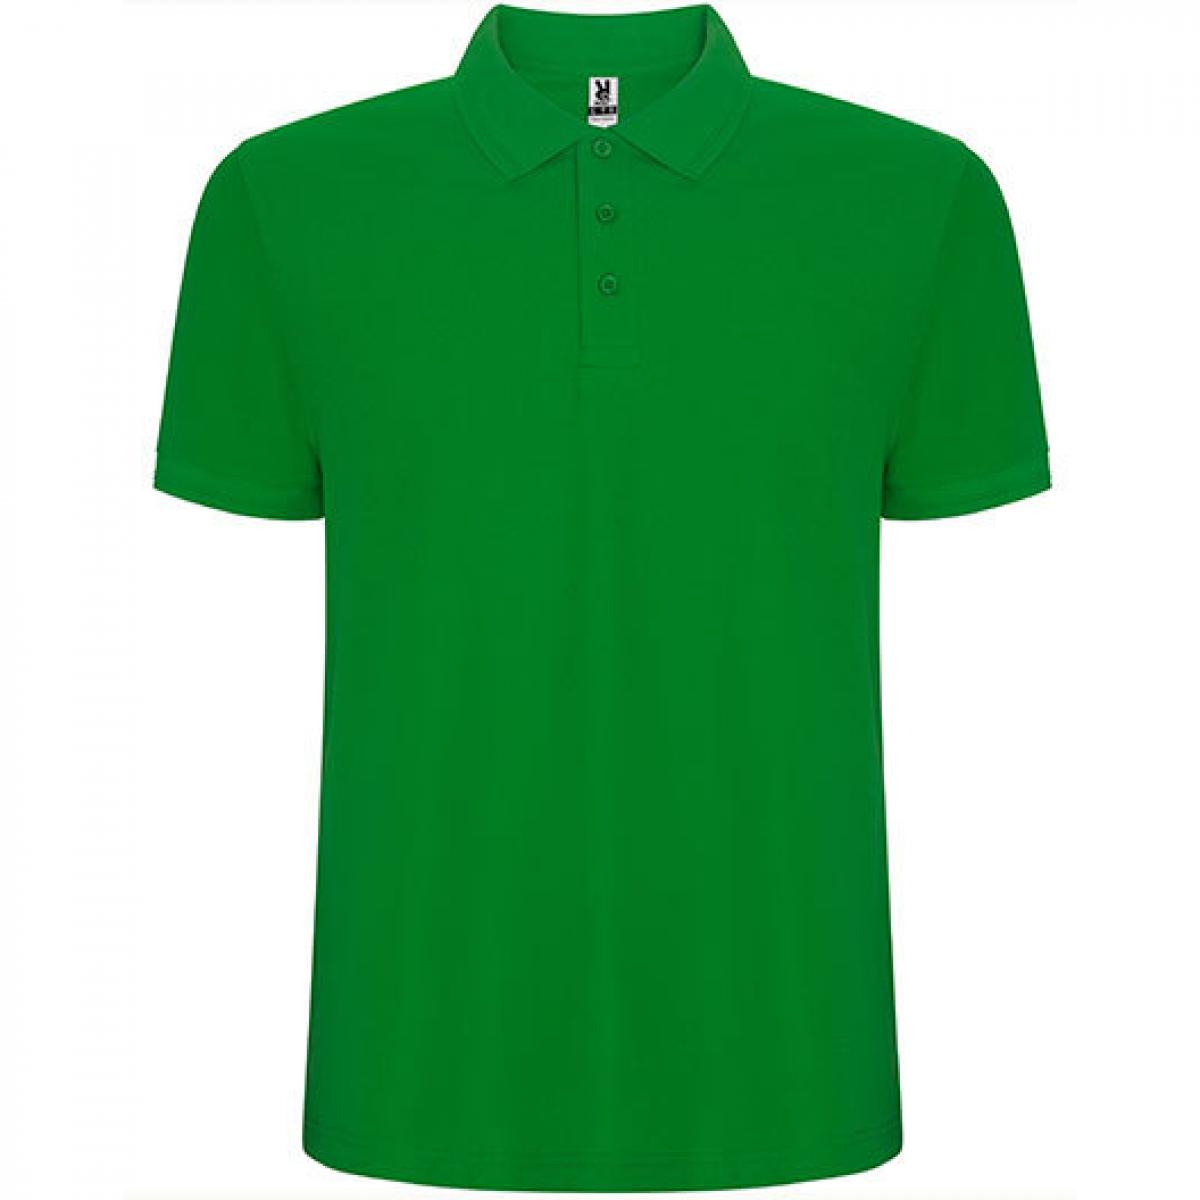 Hersteller: Roly Herstellernummer: PO6609 Artikelbezeichnung: Pegaso Premium Poloshirt - Piqué Farbe: Grass Green 83